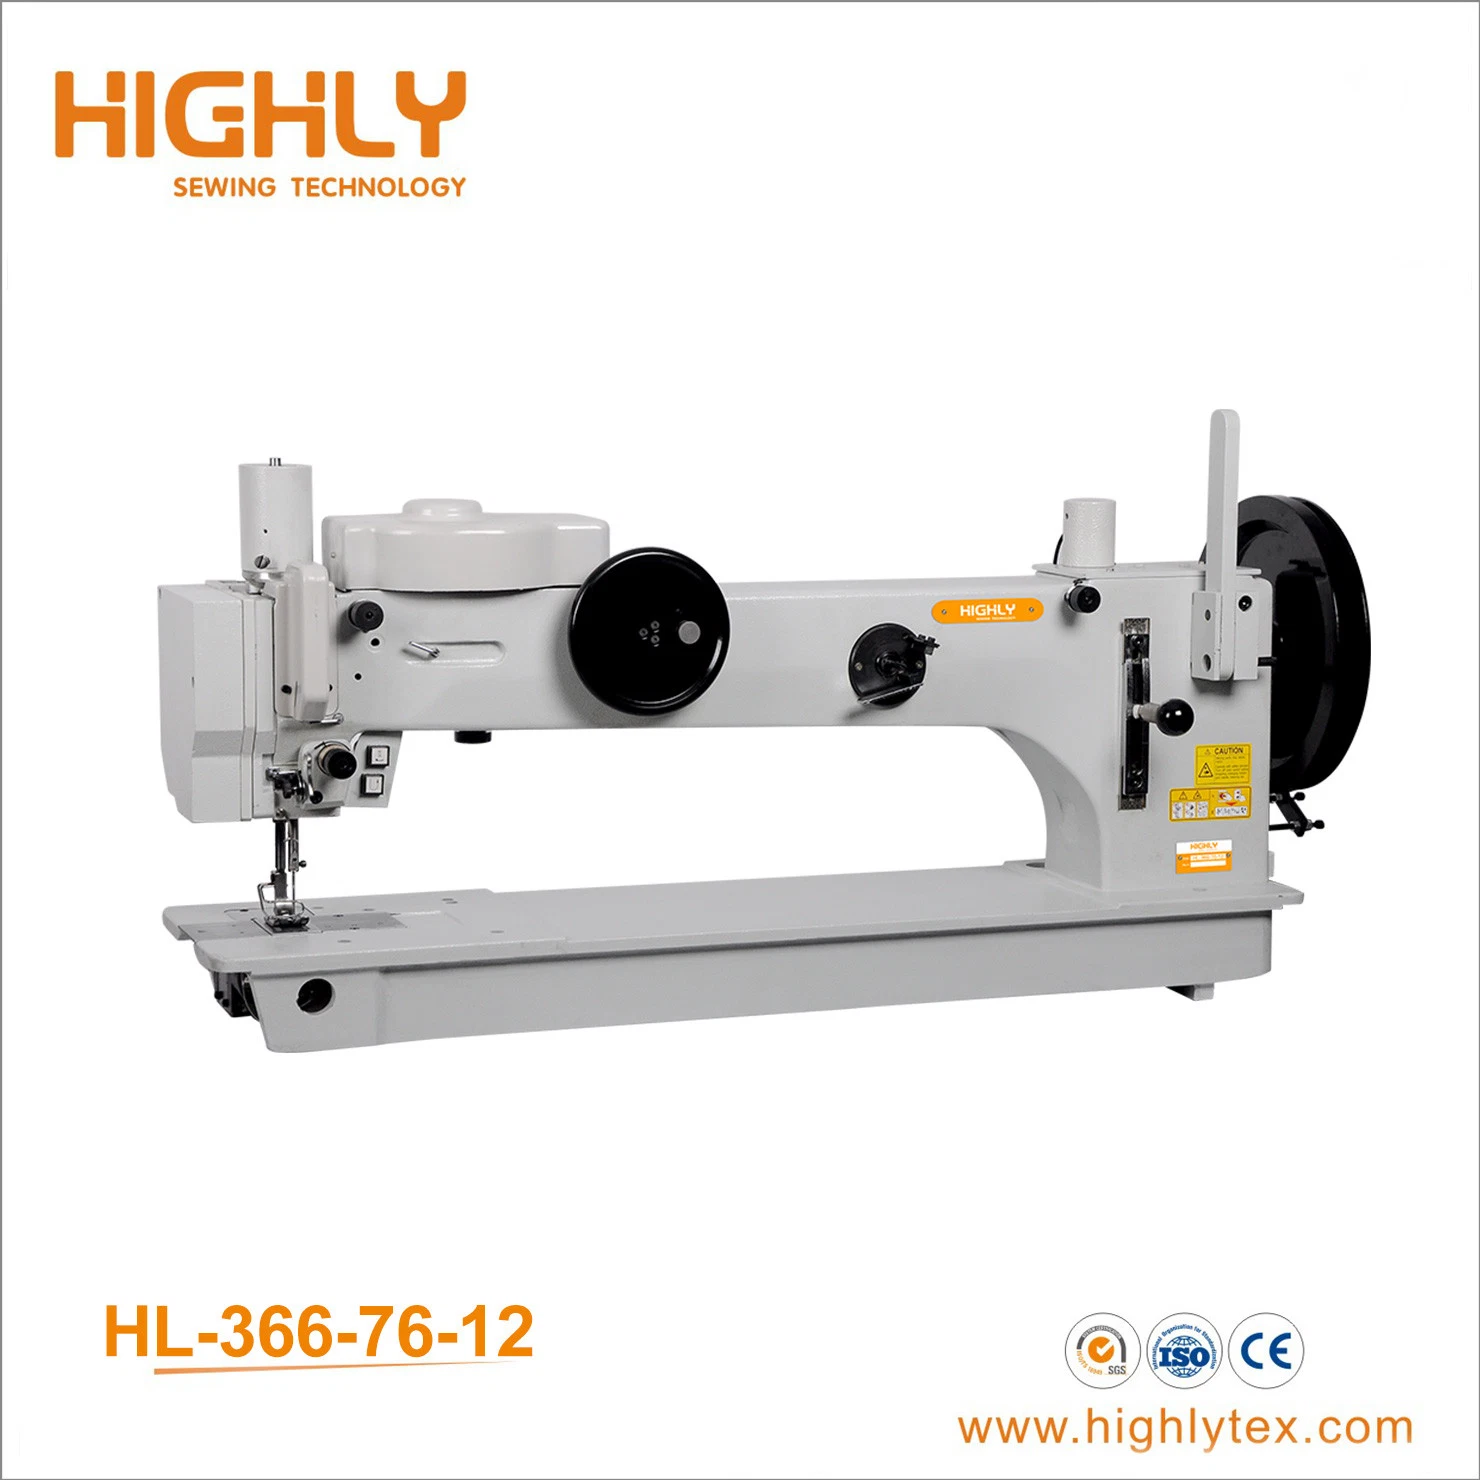 Hl-366-76-12 Long Arm Heavy Duty Zigzag Sewing Machine